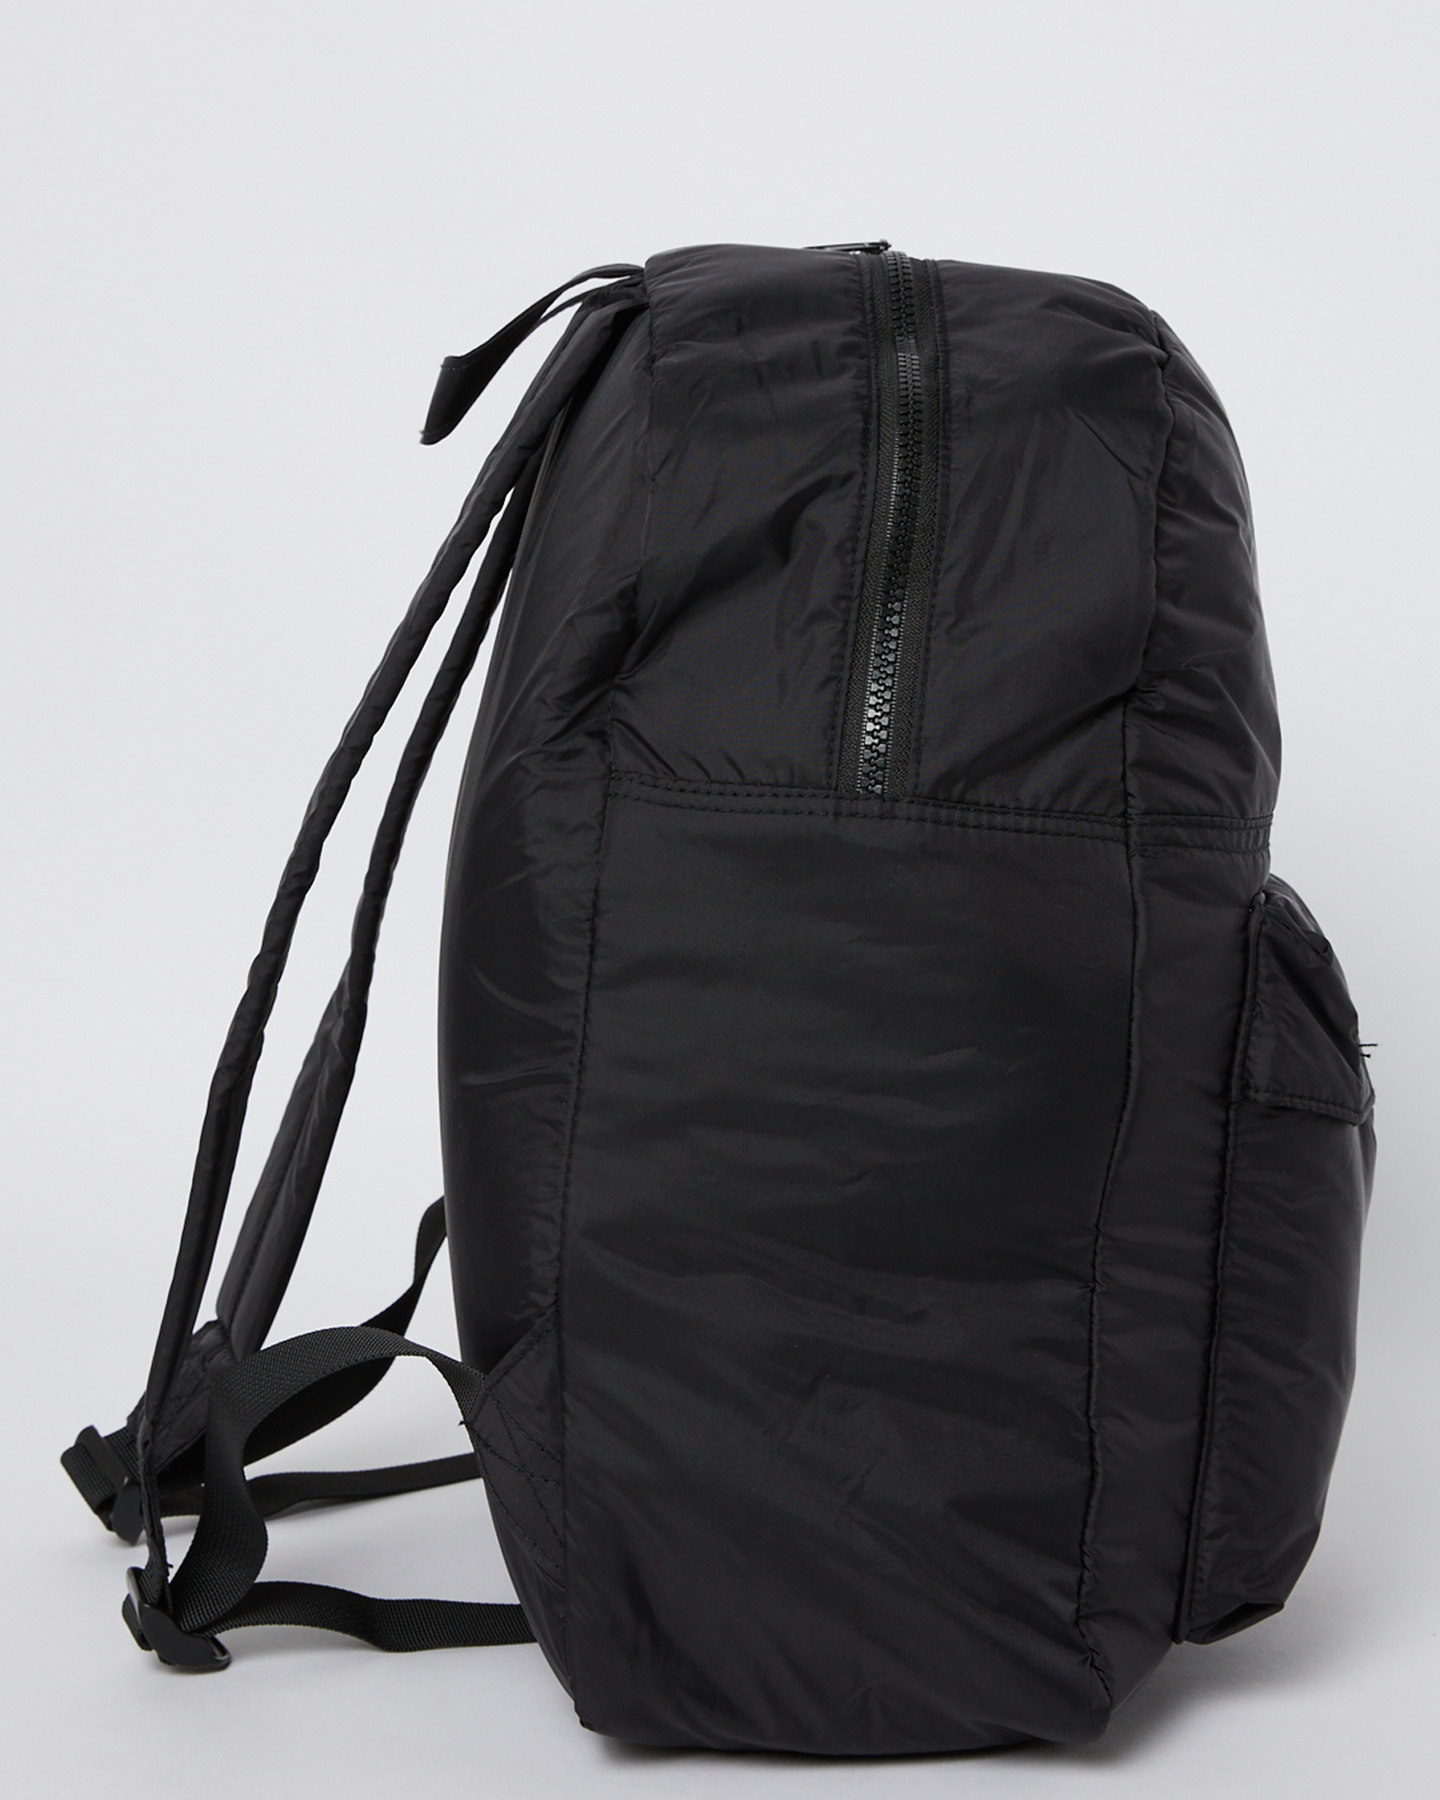 Misfit Garnished Backpack - Black | SurfStitch